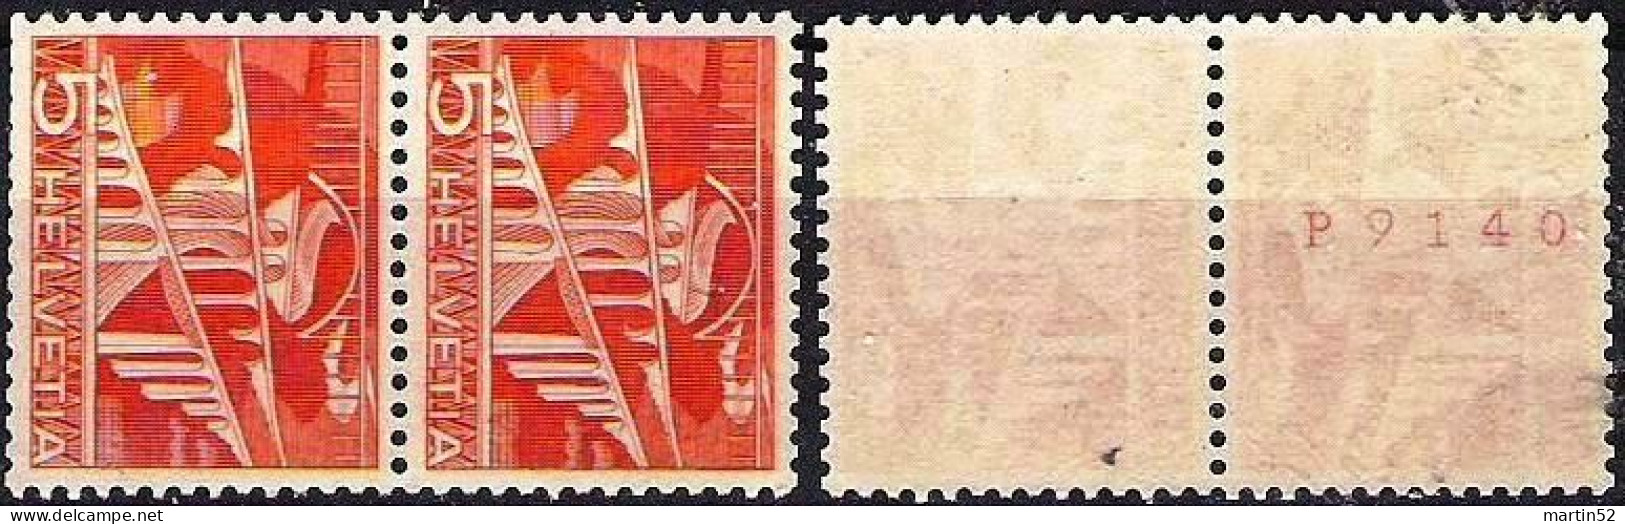 Schweiz Rolle Suisse Rouleaux Swiss Coil Sitterbrücke 1949: Zu 298RM.01 Mi 530RI Mit Avec N° M9140 ** MNH (Zu CHF 18.00) - Coil Stamps